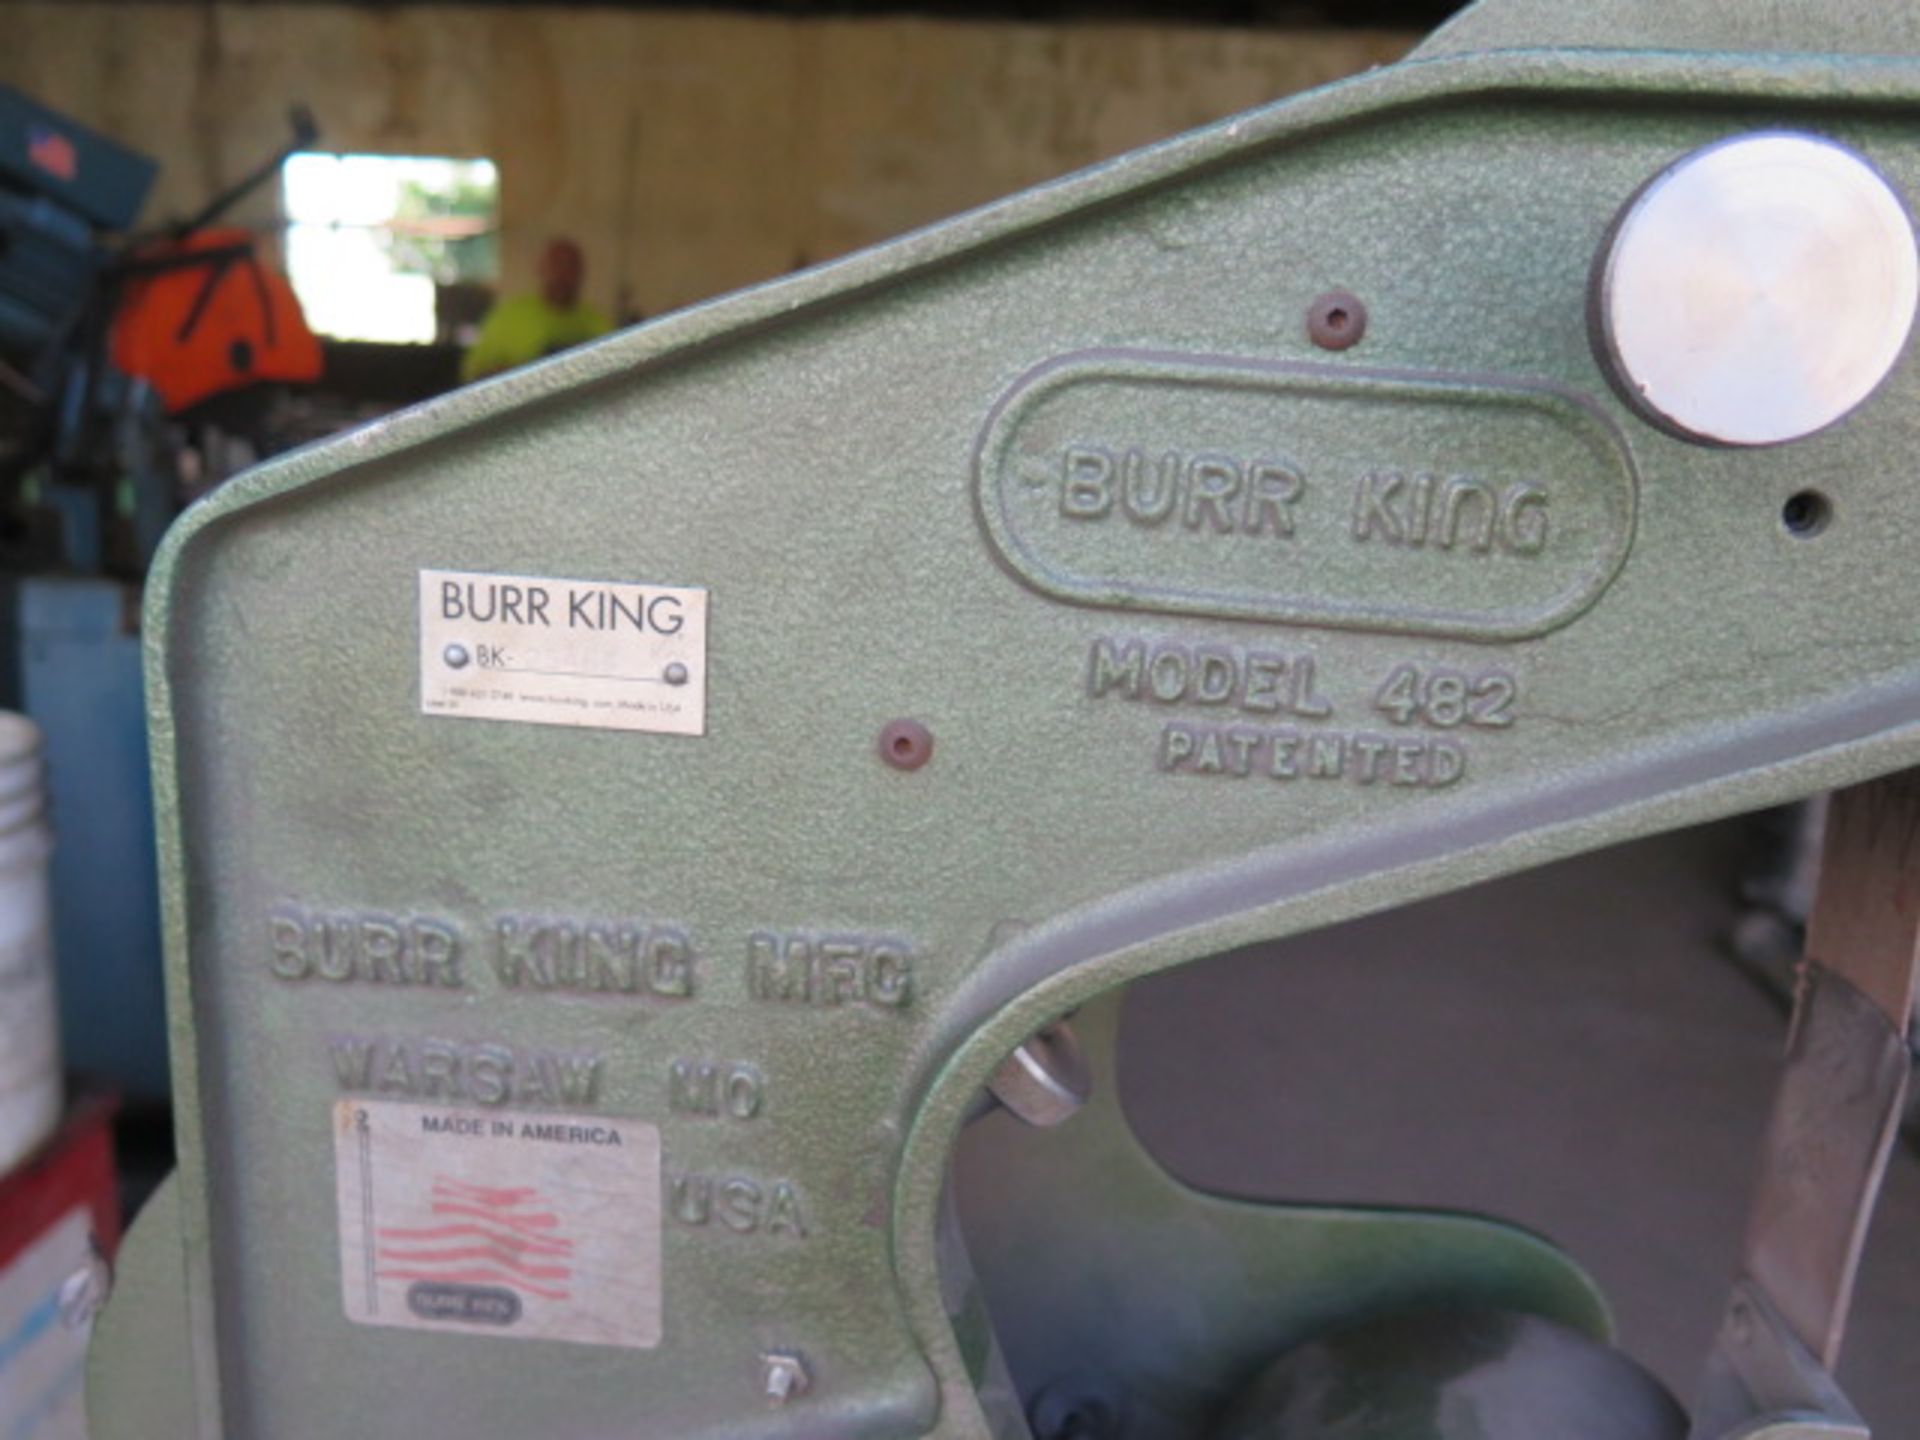 Burr King mdl. 482 2” Pedestal Belt Sander (SOLD AS-IS - NO WARRANTY) - Image 5 of 5